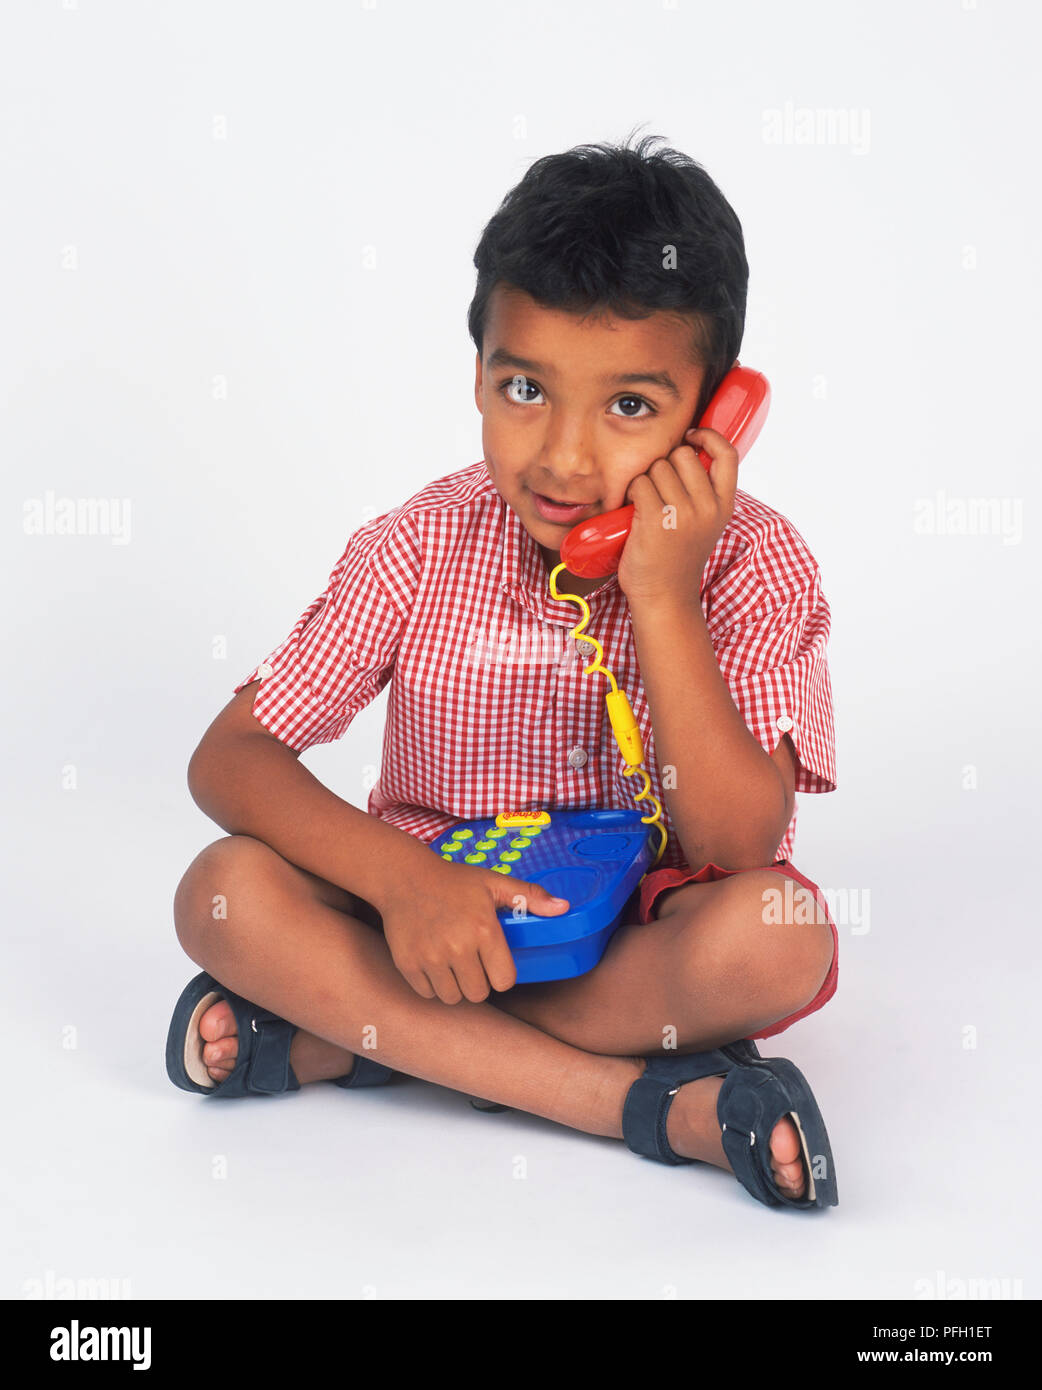 Boy sitting cross legged, holding toy téléphone sur ses genoux et le récepteur à son oreille Banque D'Images